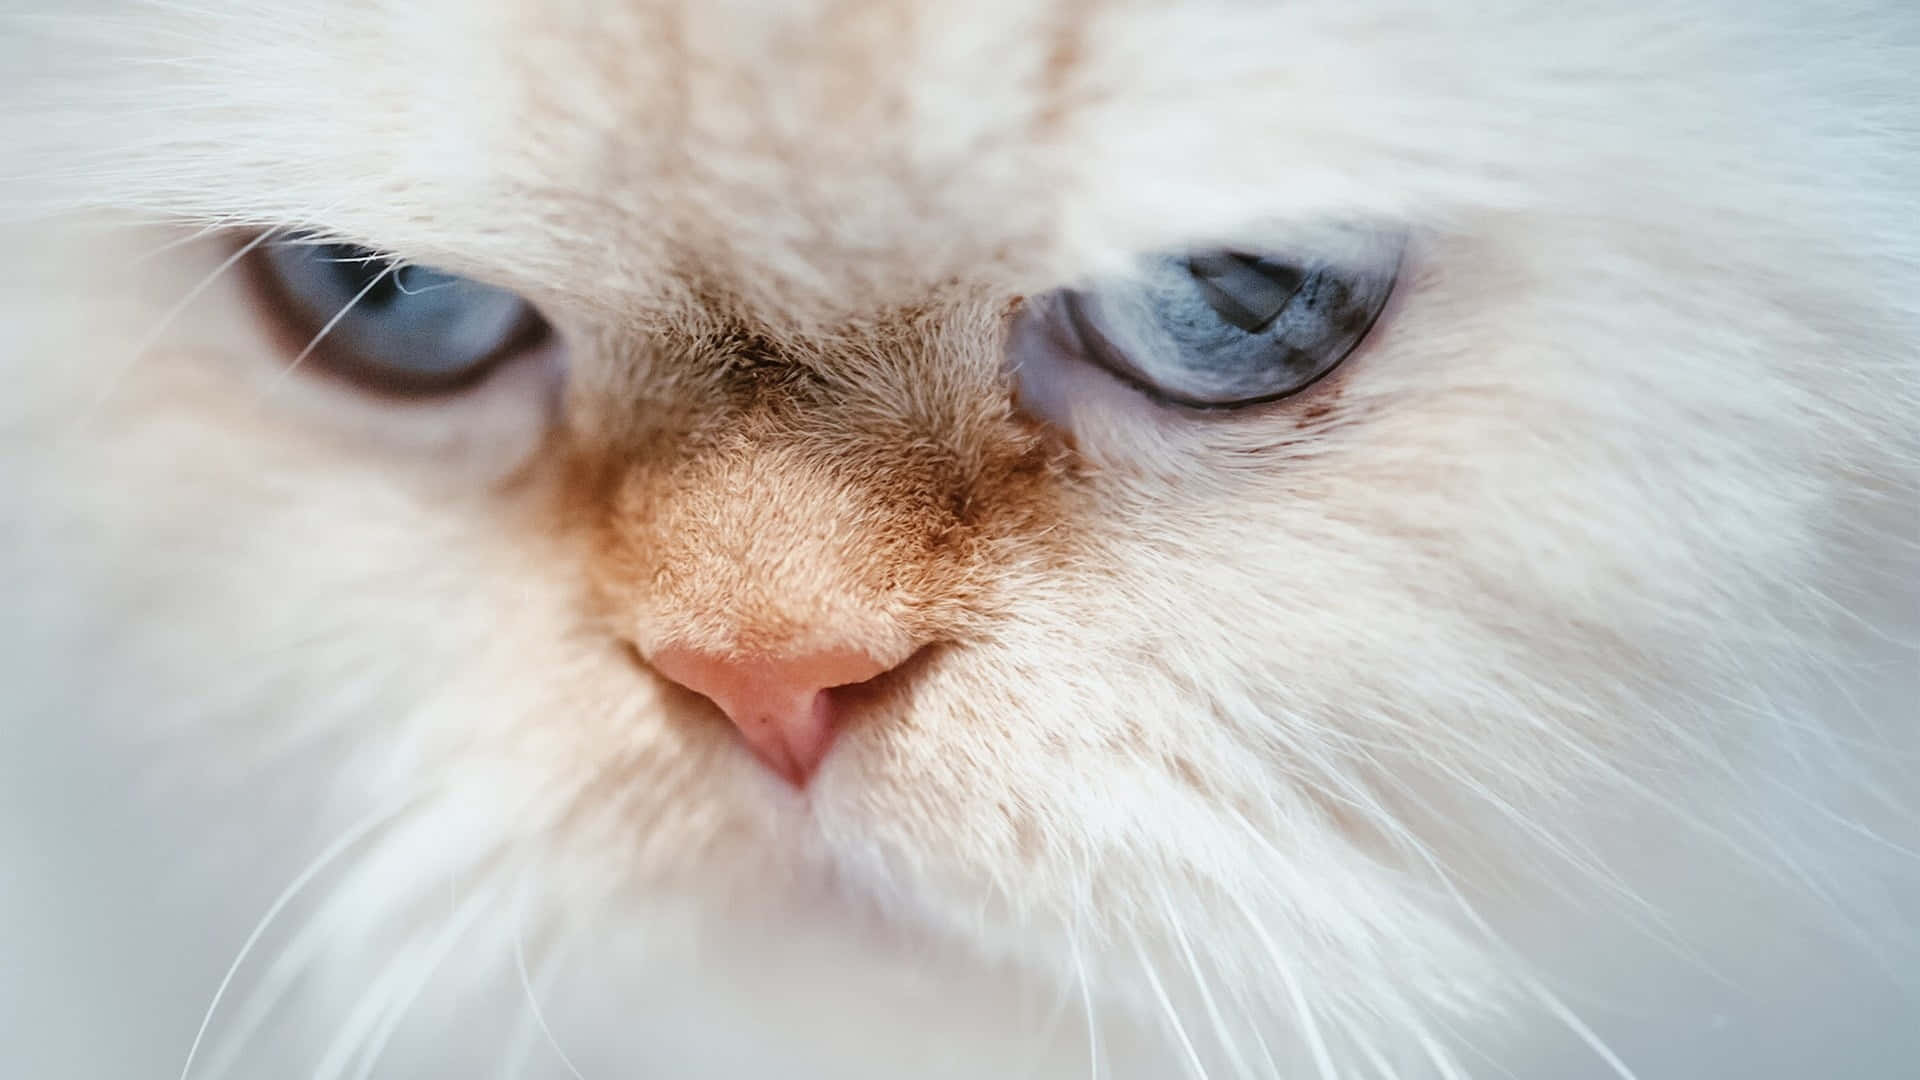 Grumpycat: No Impresionado.